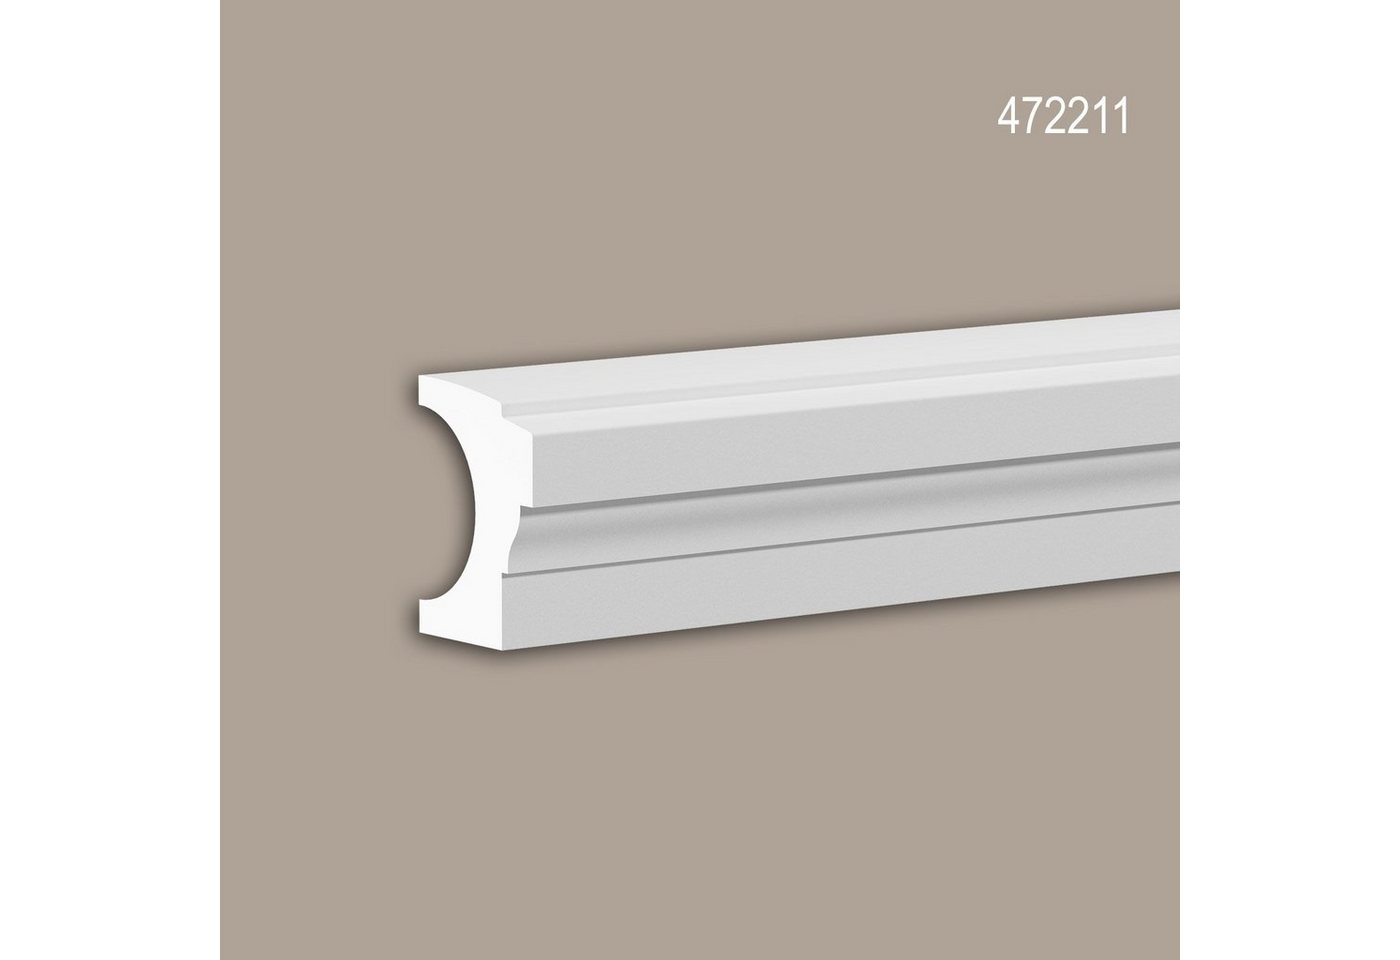 Profhome Wanddekoobjekt 472211 (Halbbalustrade Handlauf, 1 St., Außenstuck, Balustrade, Fassadenelement, Länge 3 m), weiß, vorgrundiert, für Fassadendekoration, Stil: Neo-Klassizismus von Profhome